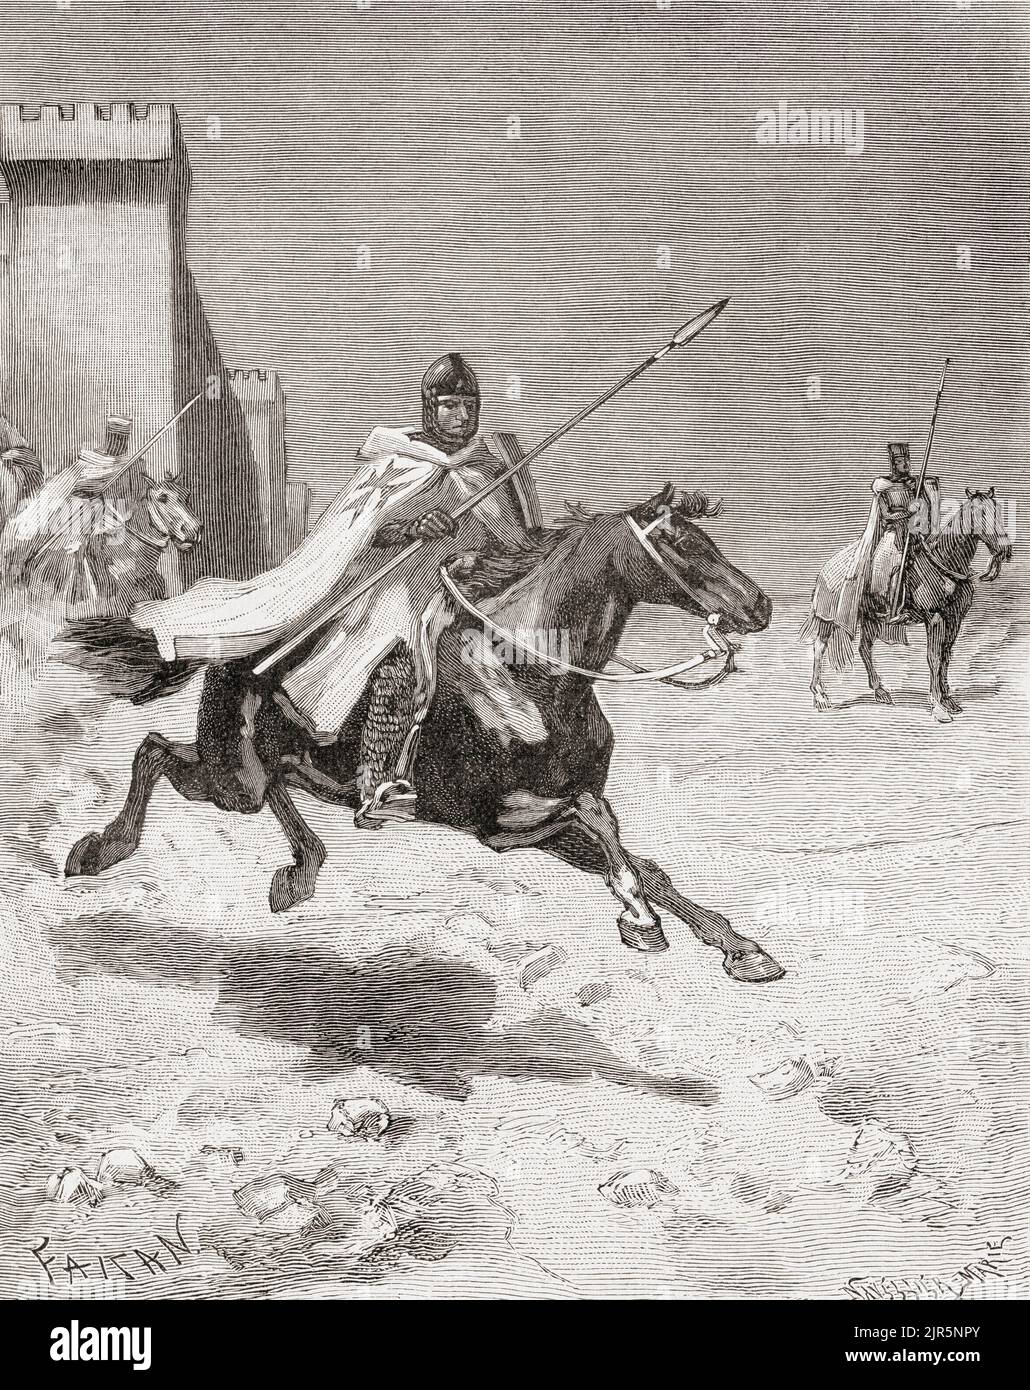 Cavalieri Templari in battaglia. Da Histoire de France, pubblicato nel 1855. Foto Stock